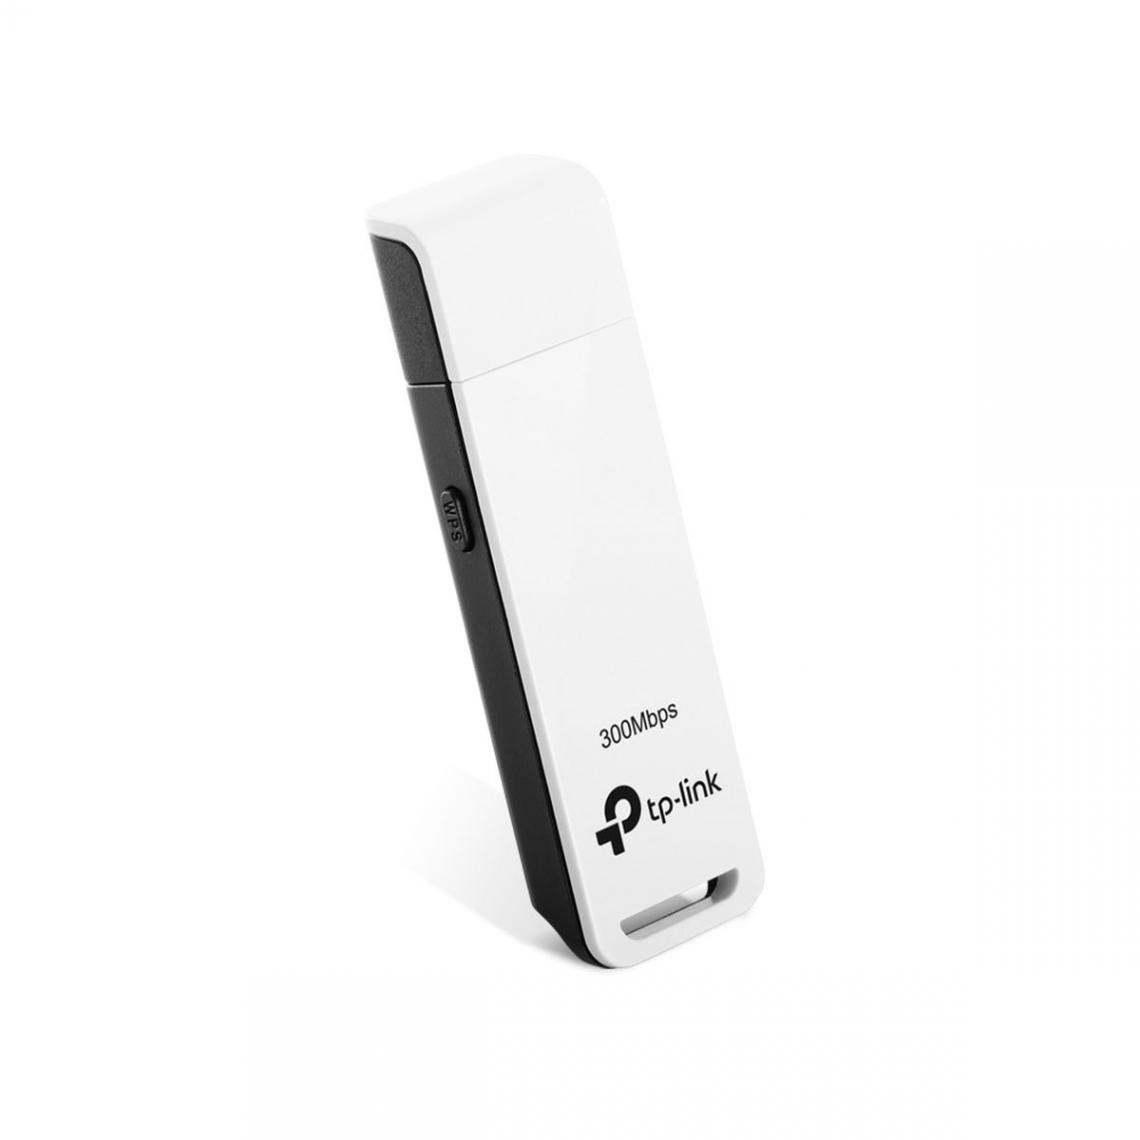 TP-LINK - Adaptateur USB WiFi TL-WN821N 300Mbps - Clé USB Wifi